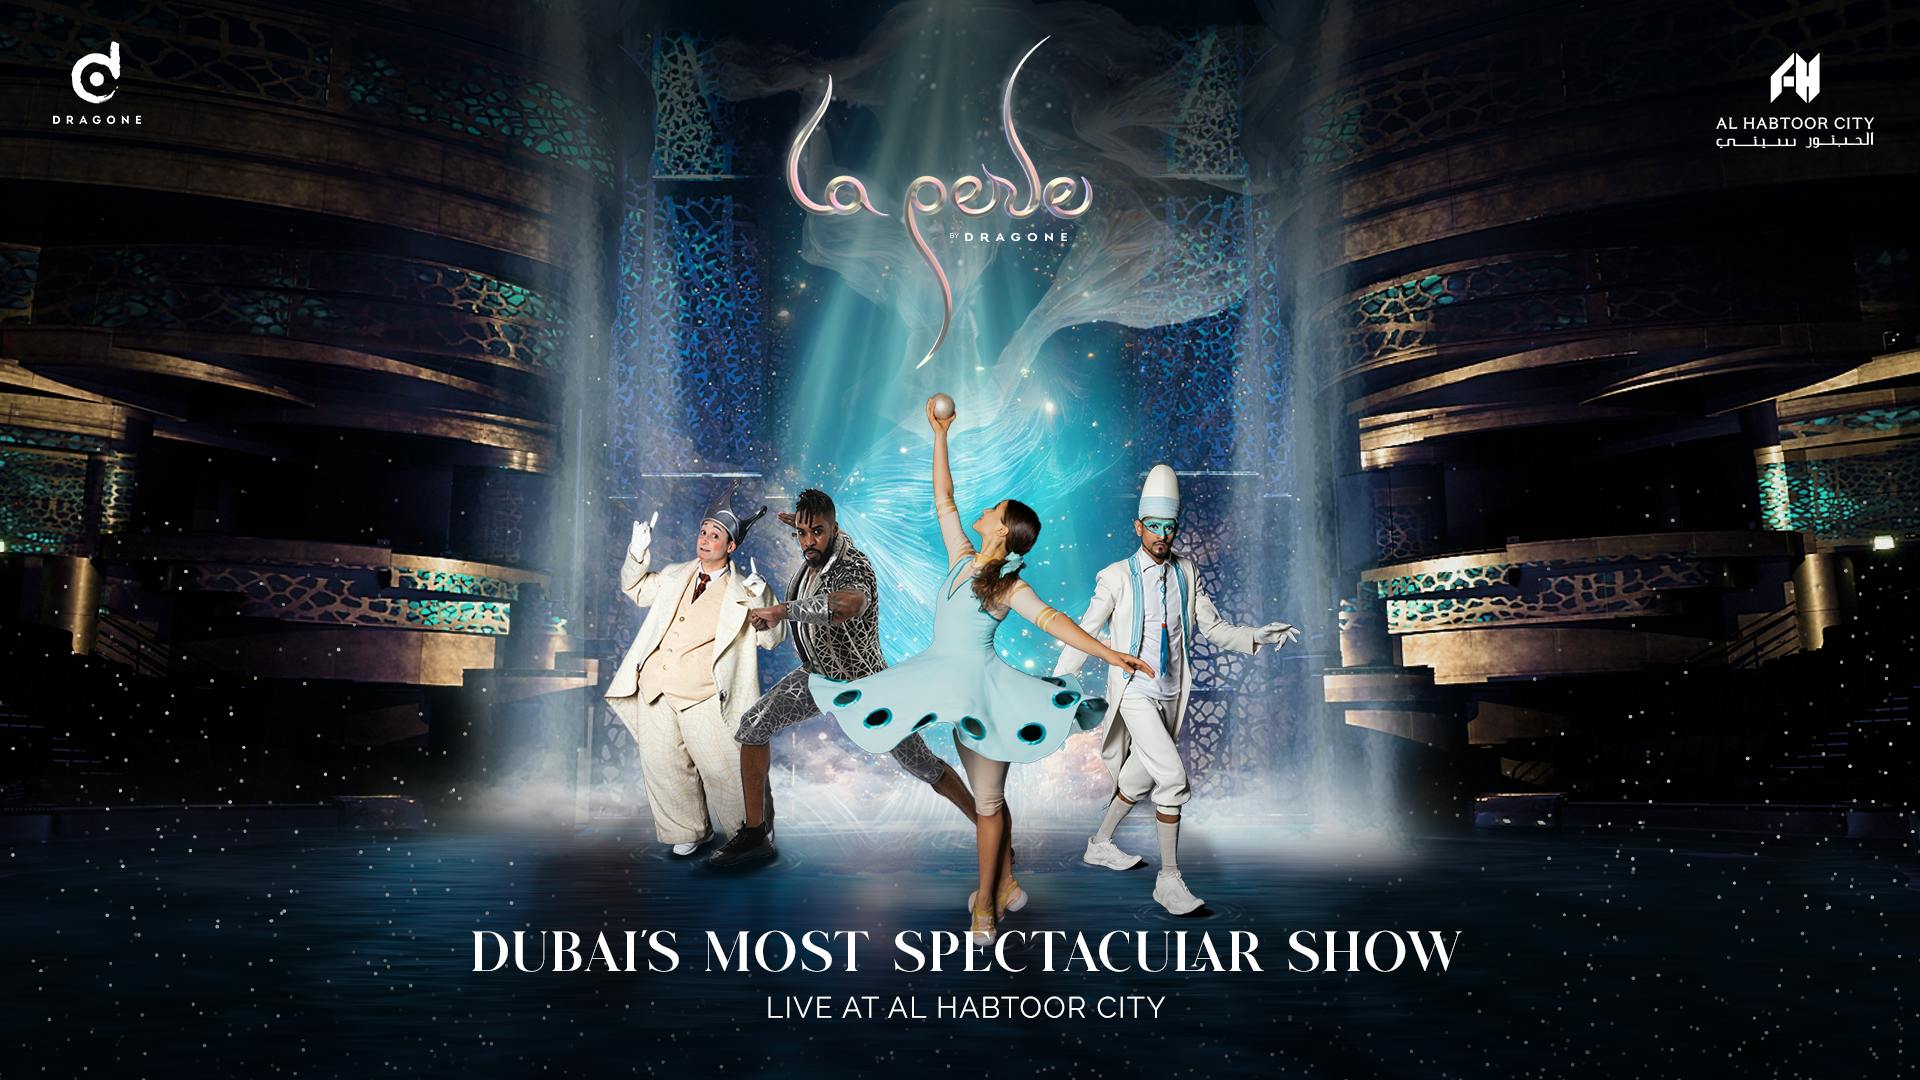 Bilhetes para o espetáculo "La Perle" de Dragone em Dubai